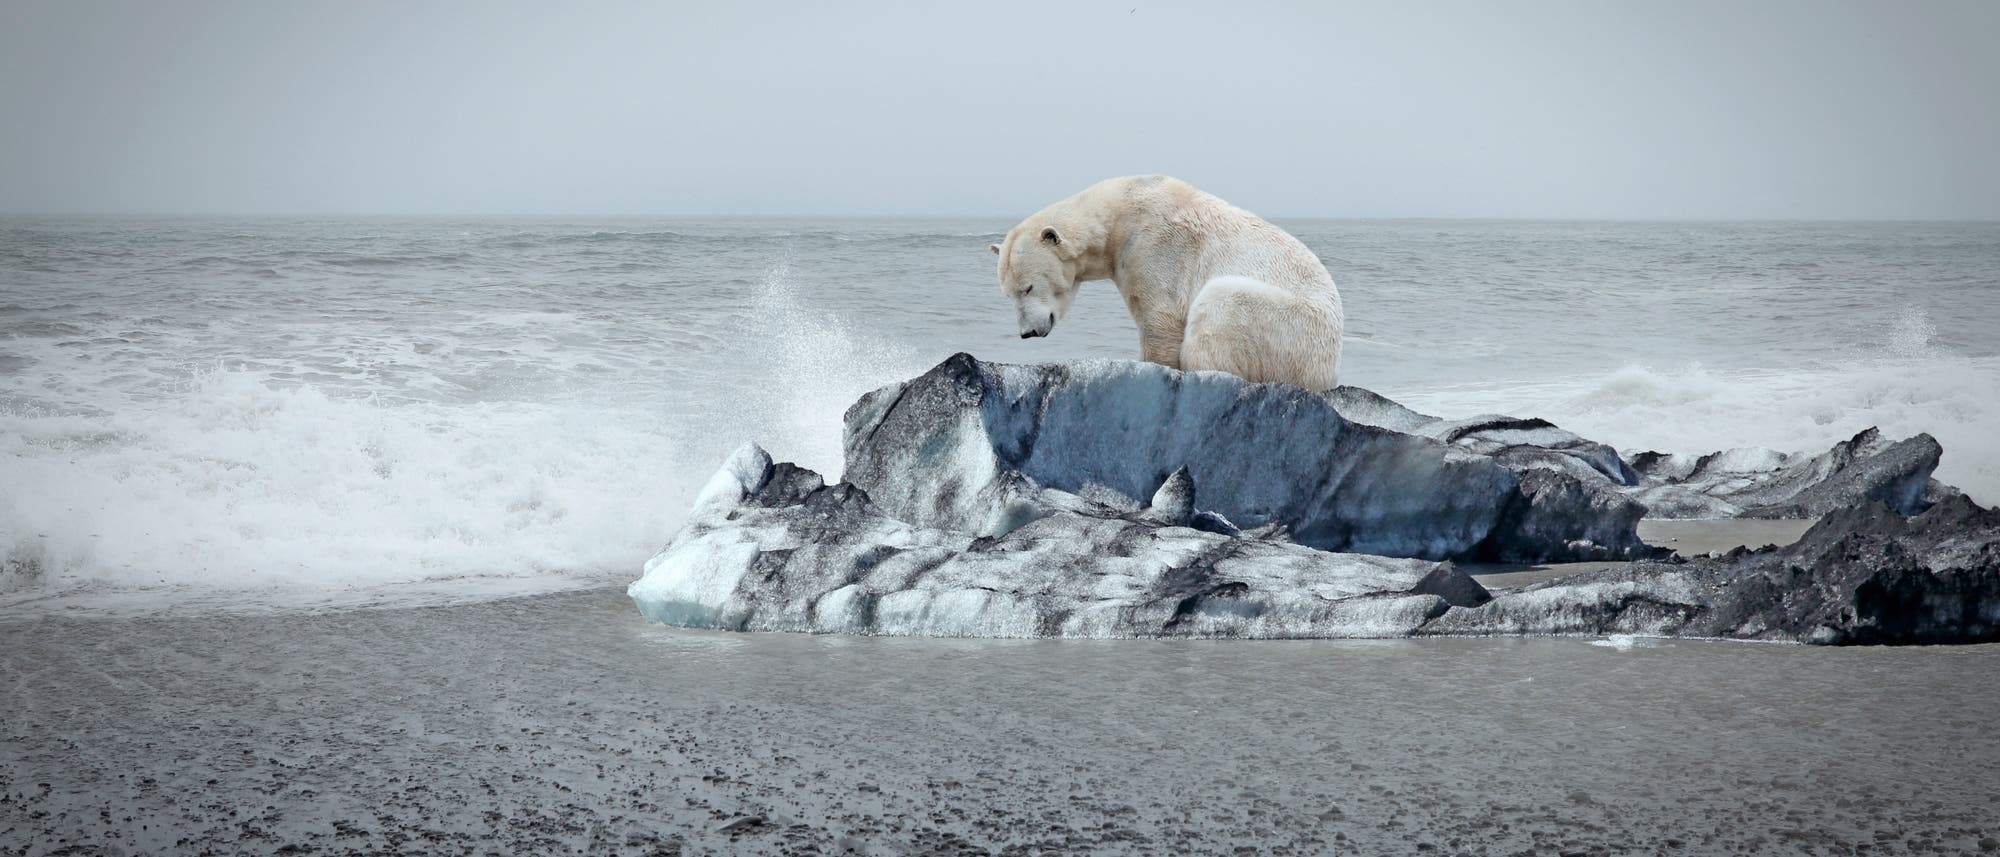 Arktische Tiere wie Eisbären sind auf Meereis angewiesen. Obwohl die jährliche Mindestausdehnung in diesem Jahr relativ hoch war, schrumpft die Eisdecke mit dem globalen Temperaturanstieg.